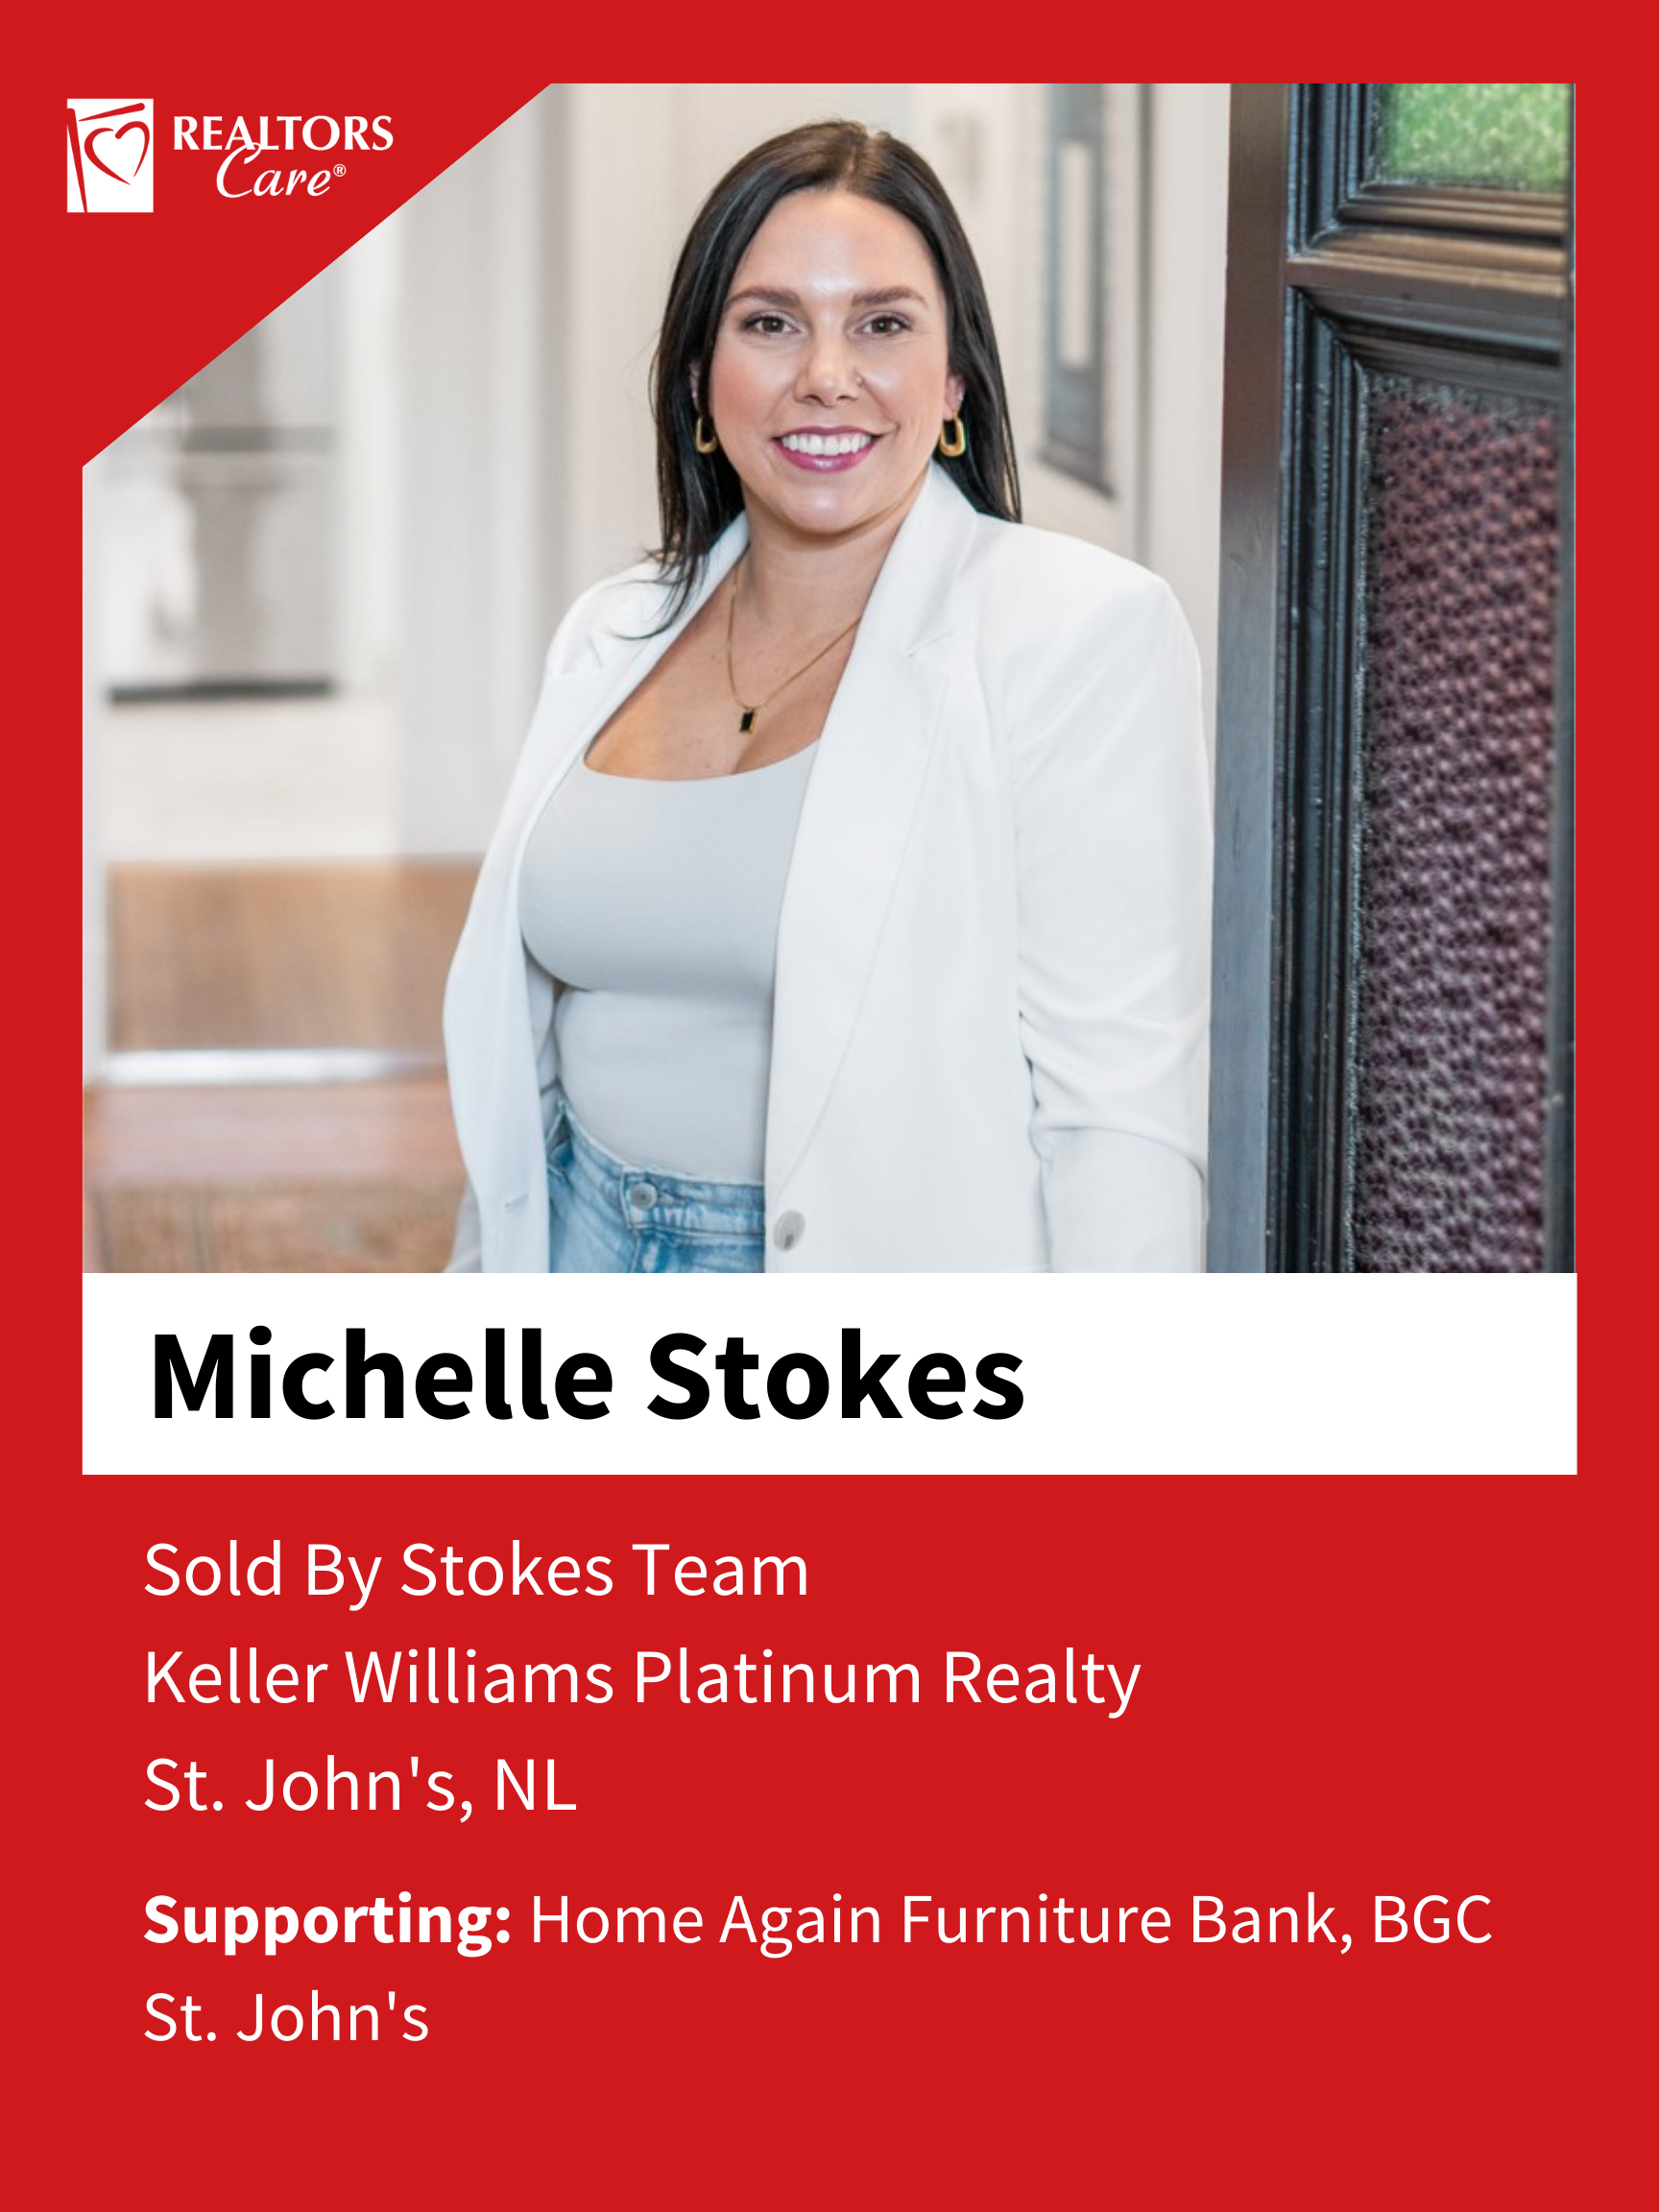 Michelle Stokes
St. John's	NL
